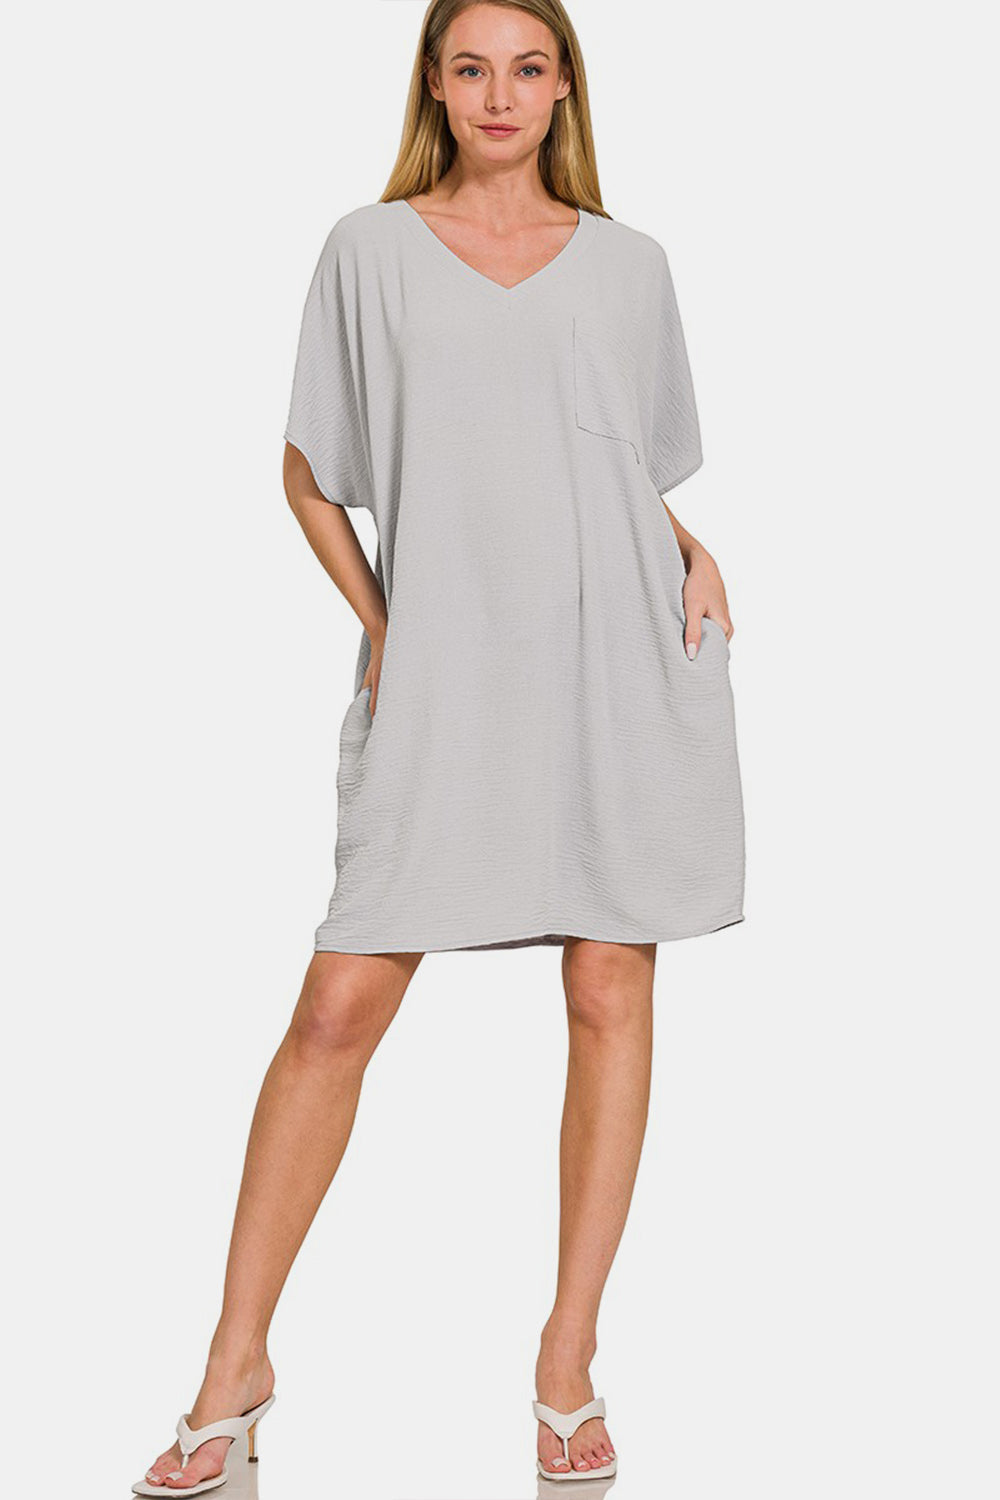 Zenana V-Neck Tee Dress with Pockets - DRESSES - Grey